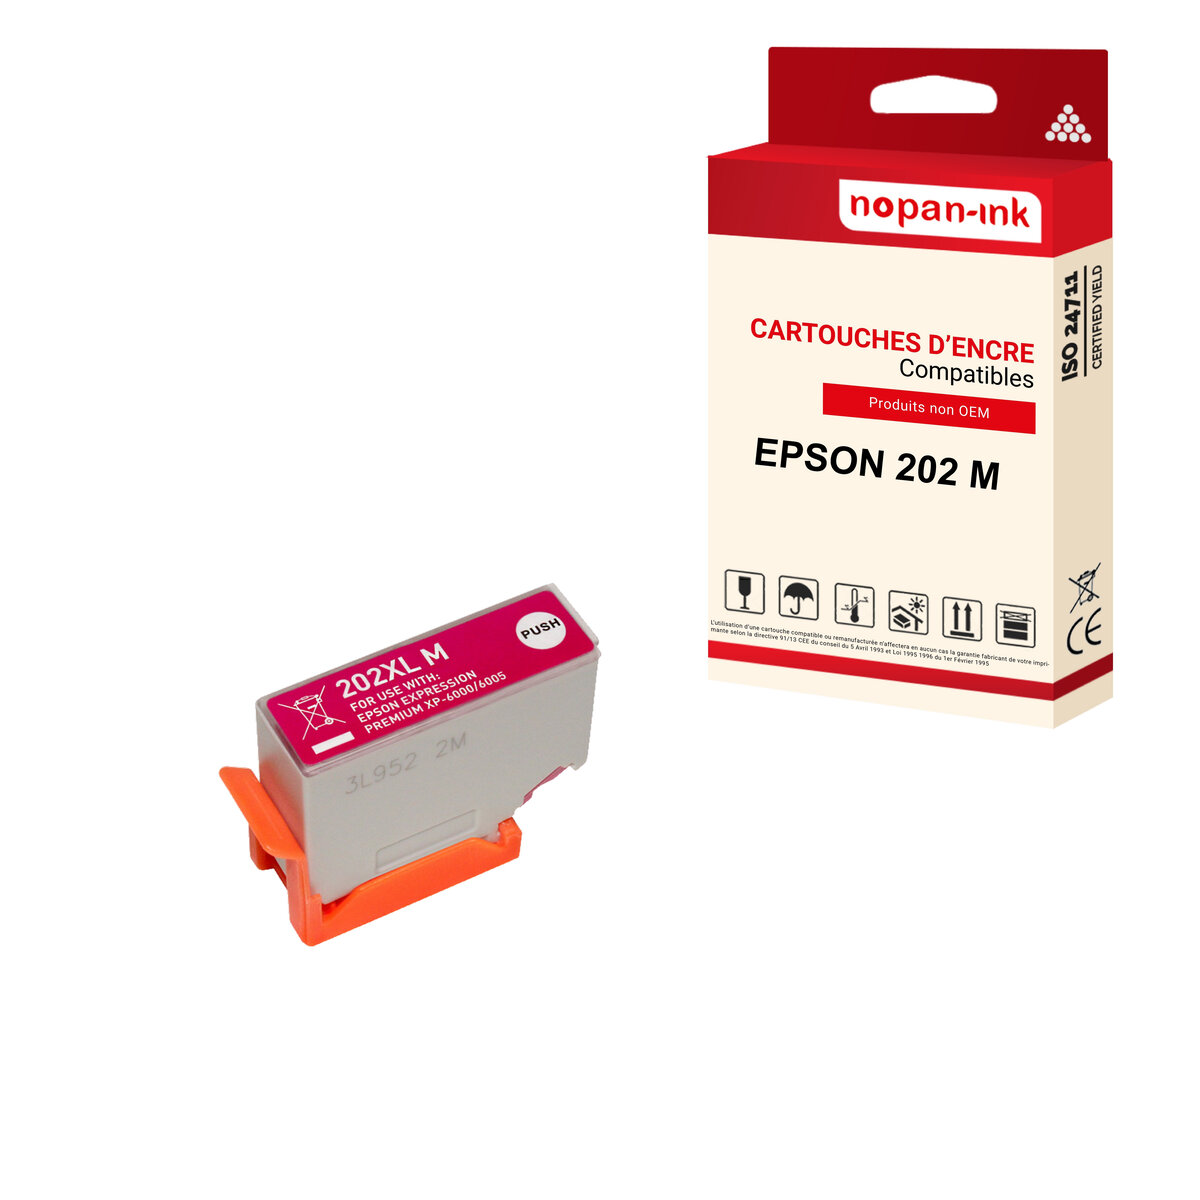 Cartouches d'encre Epson 202 XL compatibles avec Epson Expression